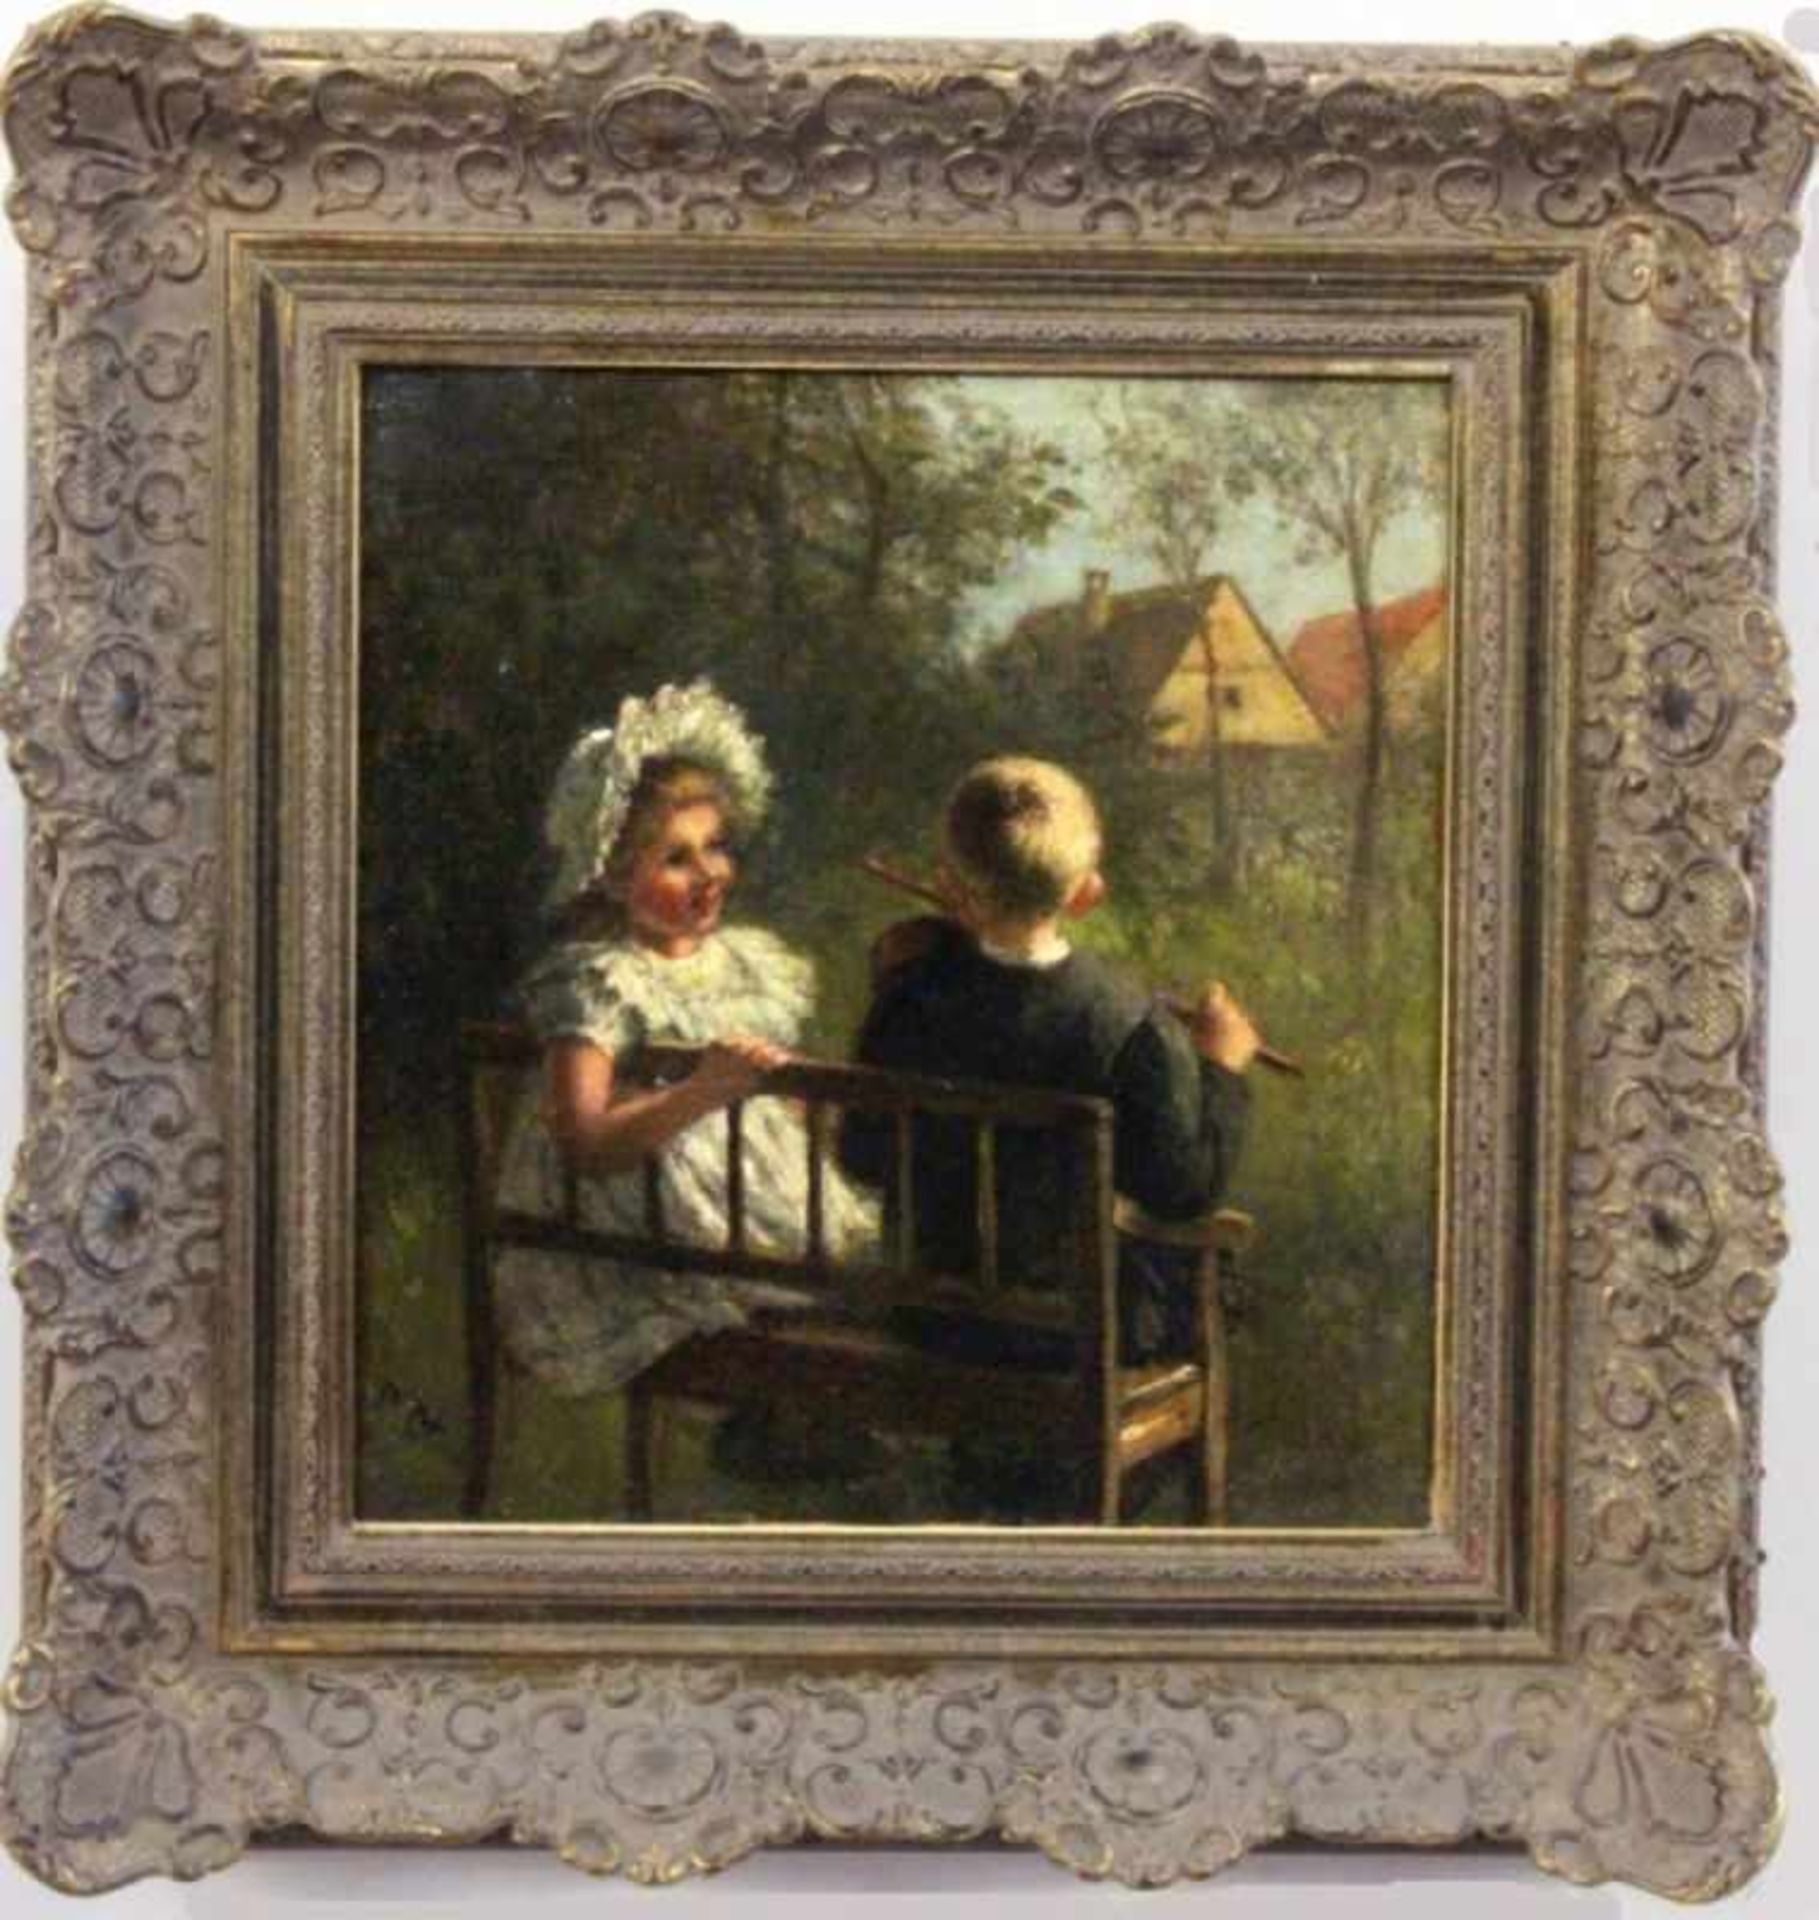 PETERS, PIETRONELLA Stuttgart 1848 - 1924 Zwei Kinder auf einer Bank sitzend. Öl/Lwd., auf